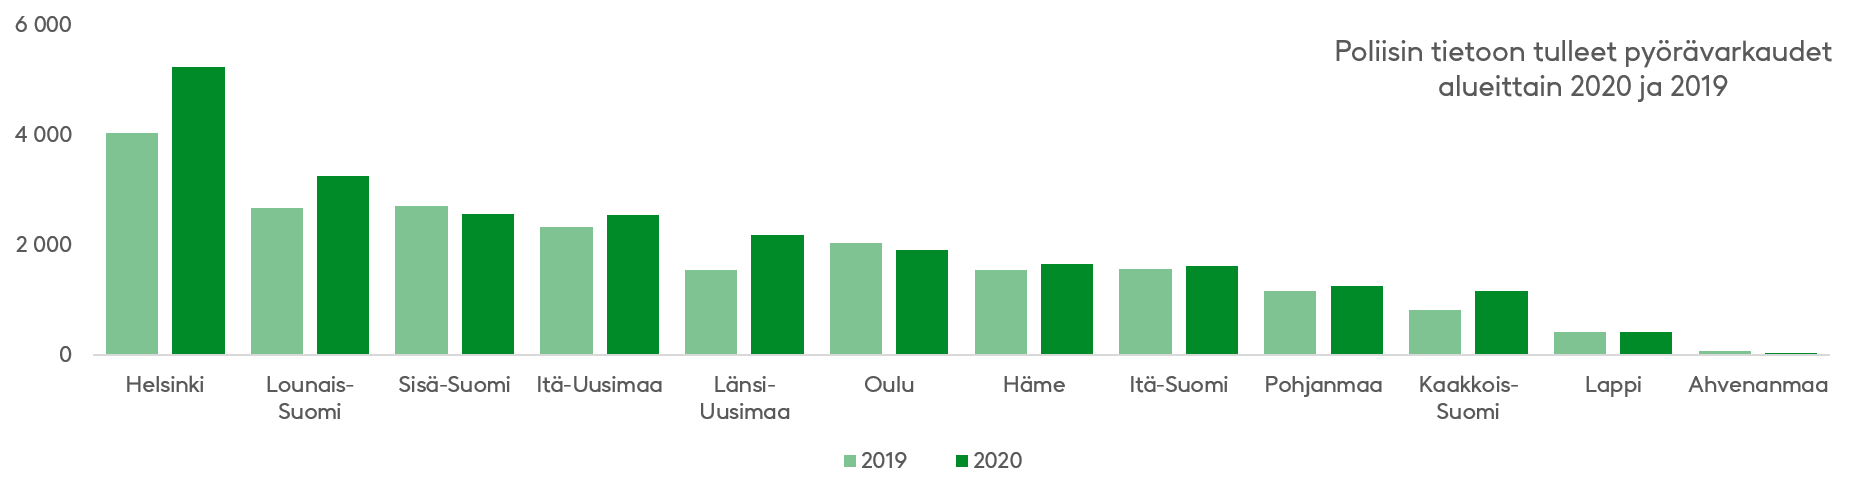 Cykelstölder som anmälts till polisen per område 2019–2020. Antalet stölder ökade särskilt i Nyland och Sydvästra Finland.